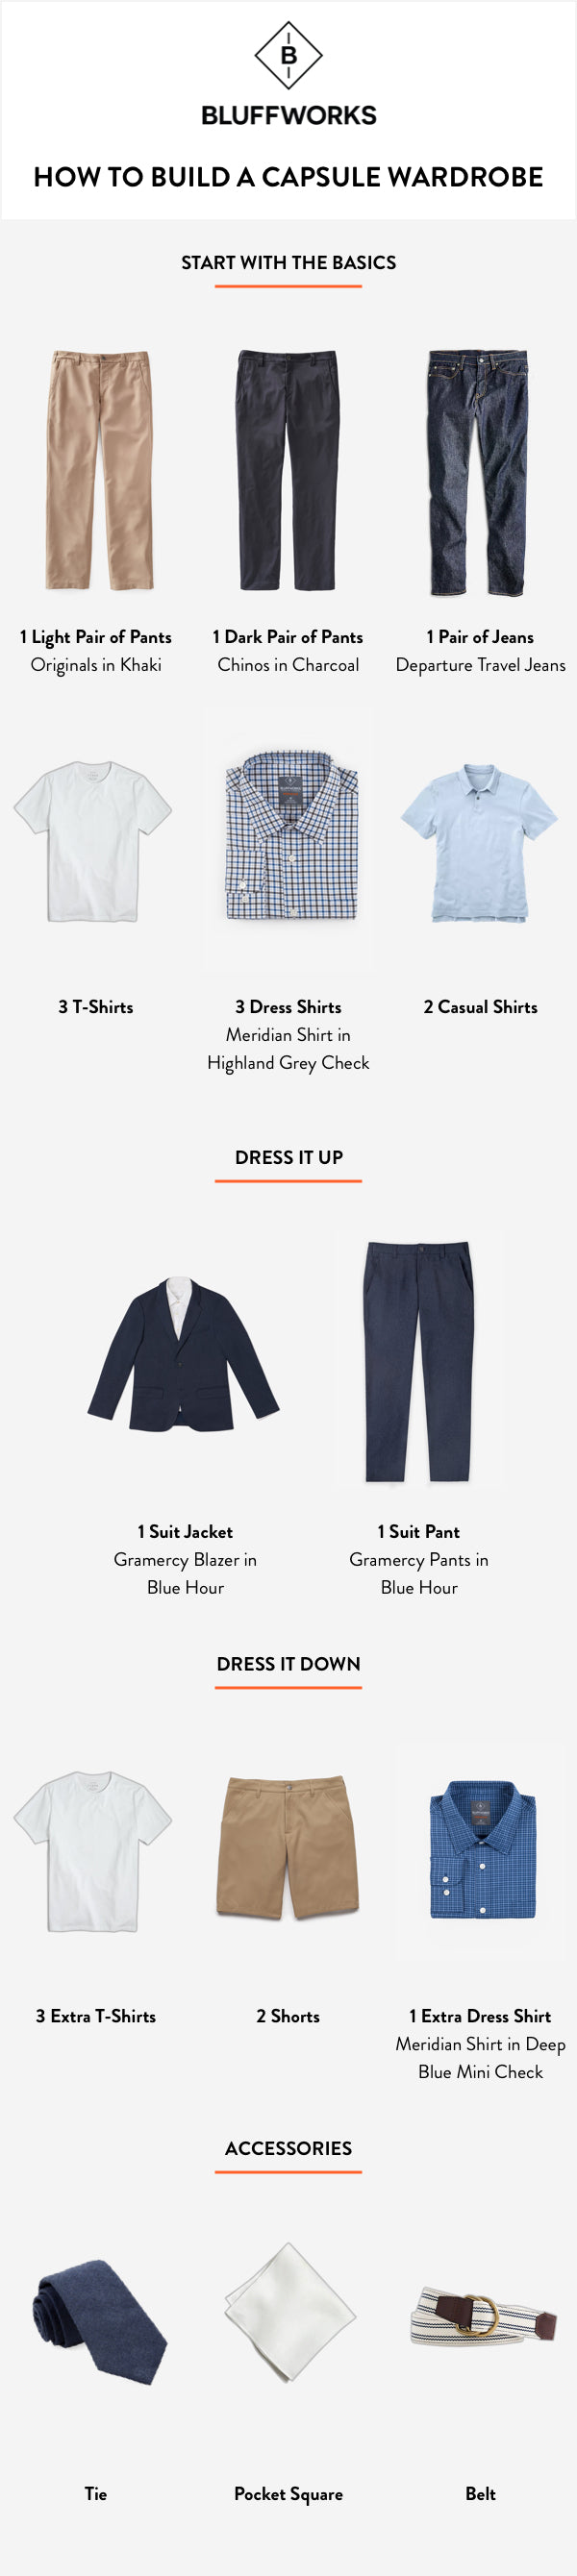 capsule wardrobe checklist men